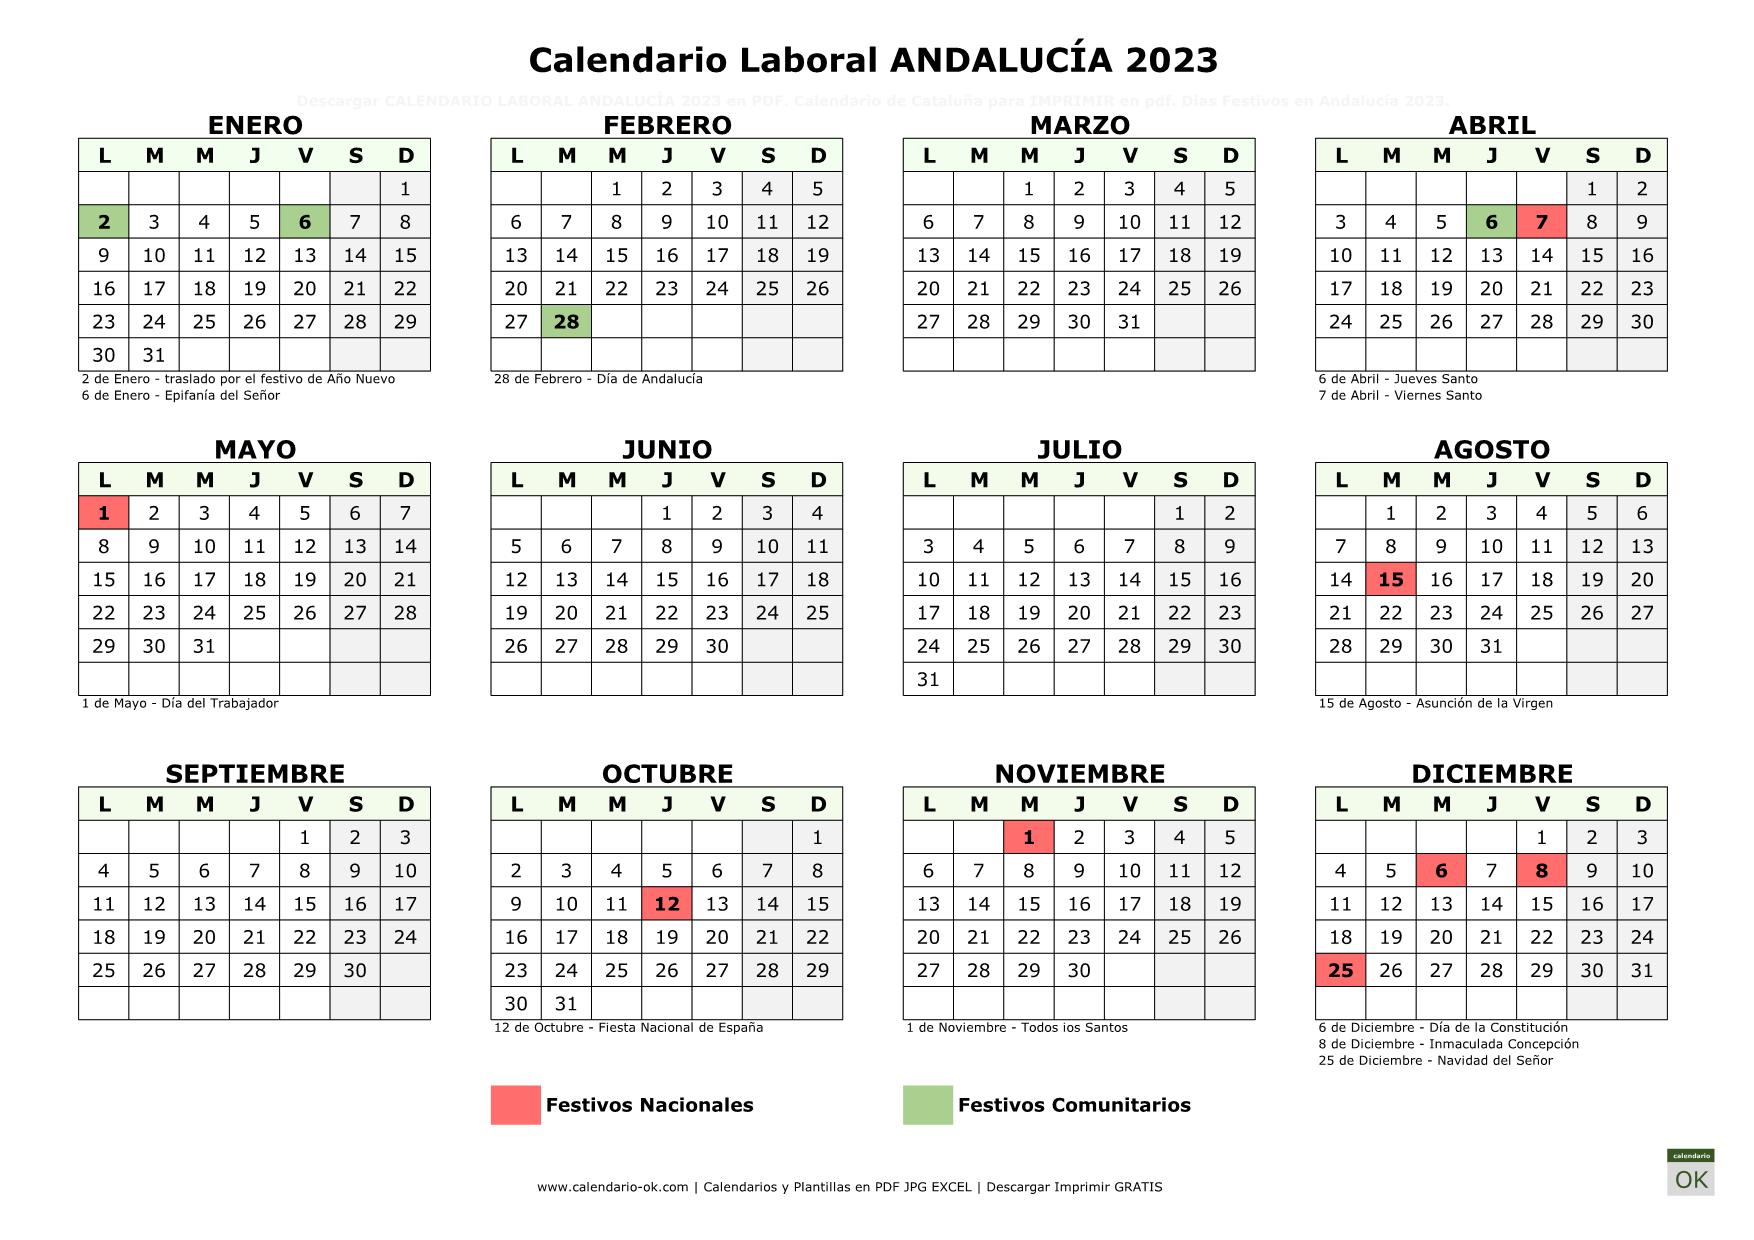 Calendario Laboral ANDALUCÍA 2023 horizontal